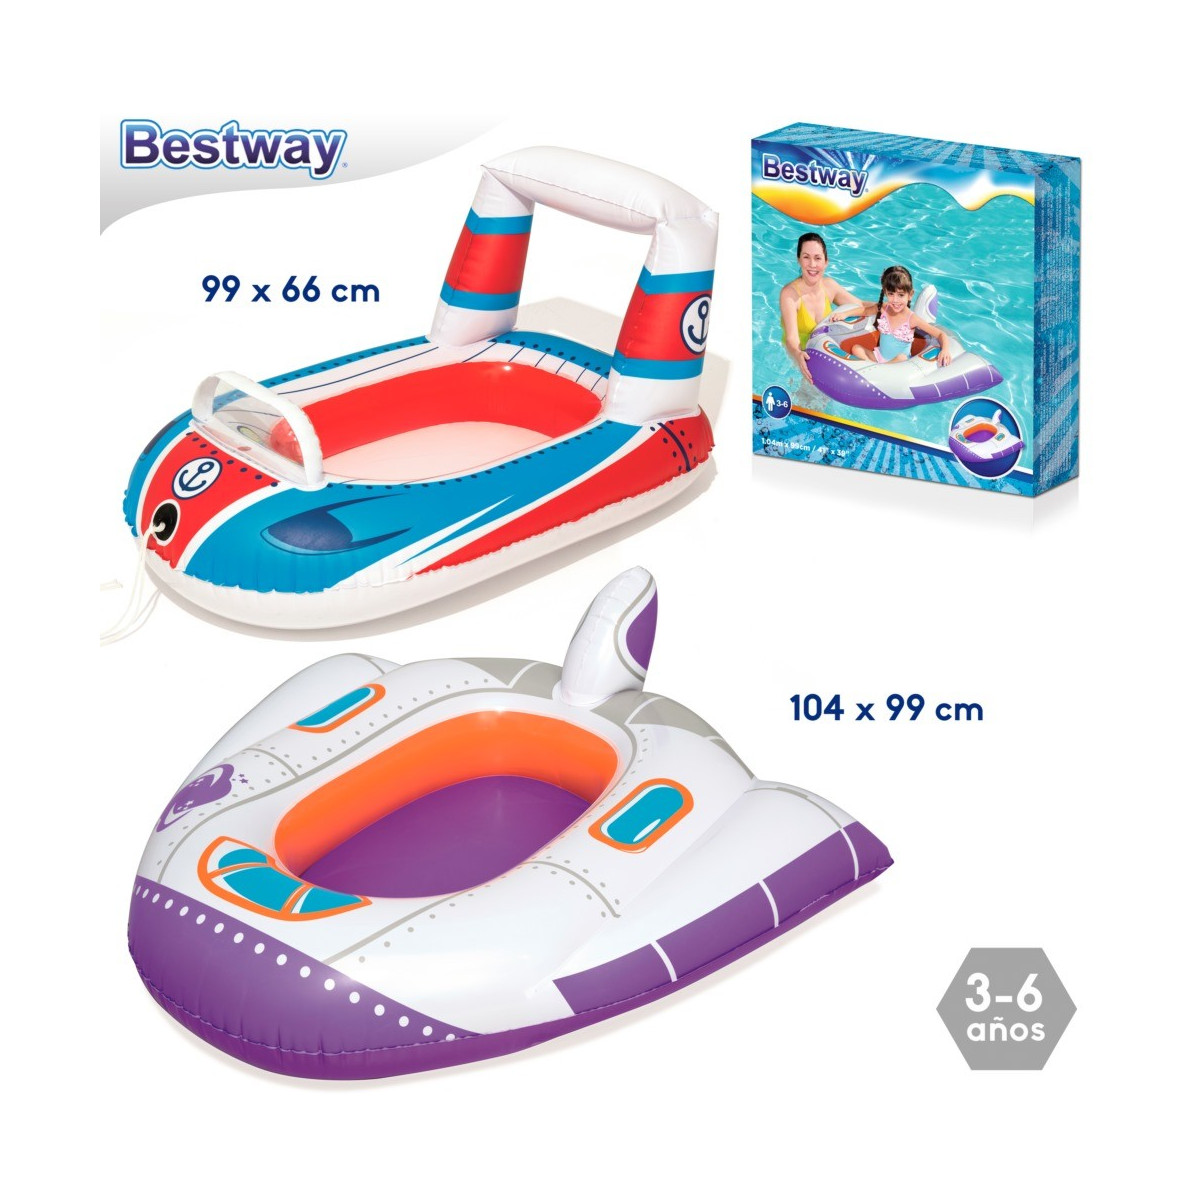 Veículos de barco para crianças 2 m infláveis 104 x 99 cm